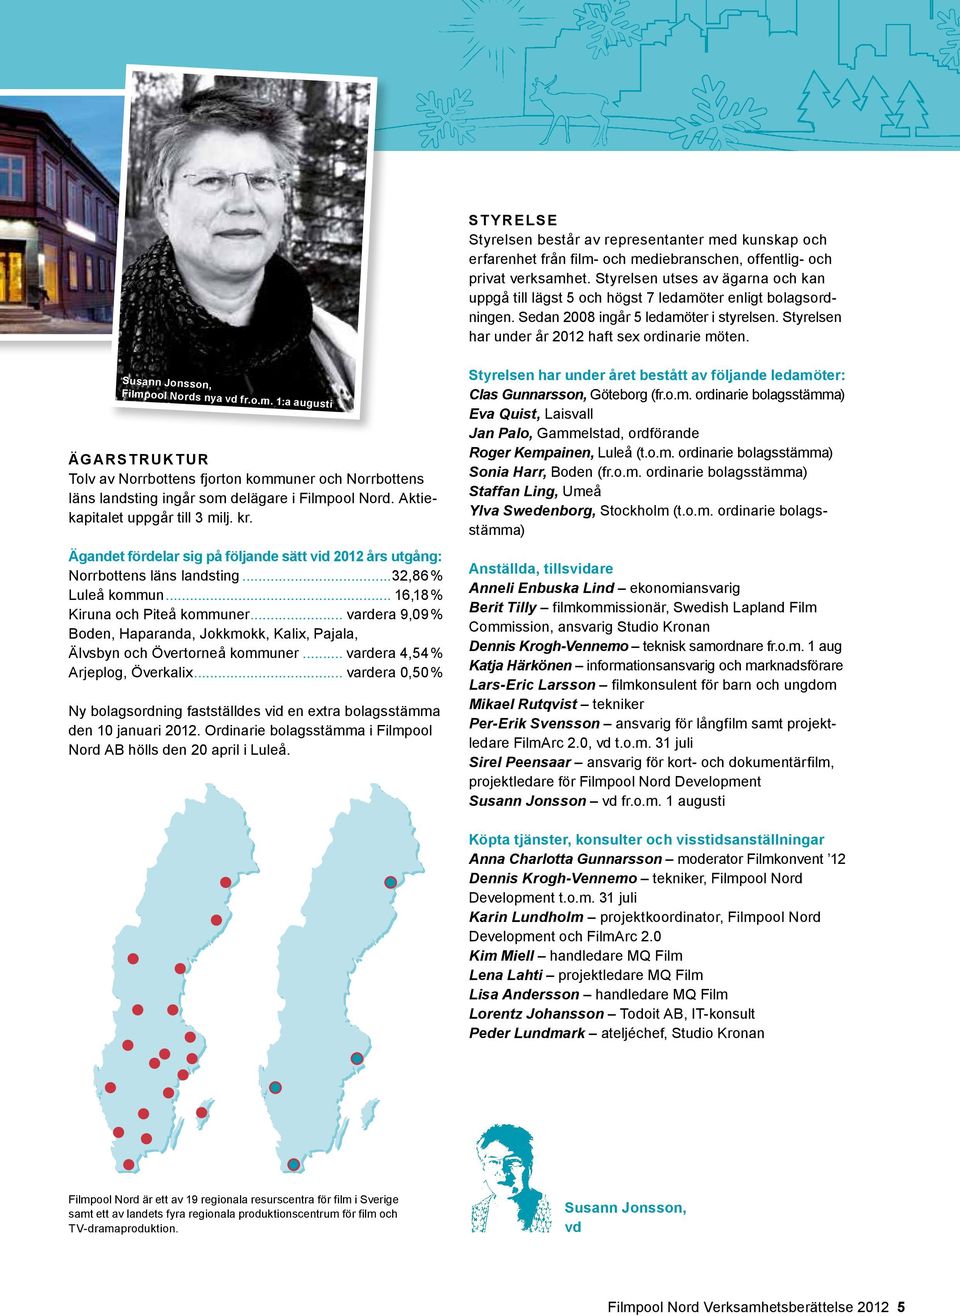 Susann Jonsson, Filmpool Nords nya vd fr.o.m. 1:a augusti Ägarstruktur Tolv av Norrbottens fjorton kommuner och Norrbottens läns landsting ingår som delägare i Filmpool Nord.